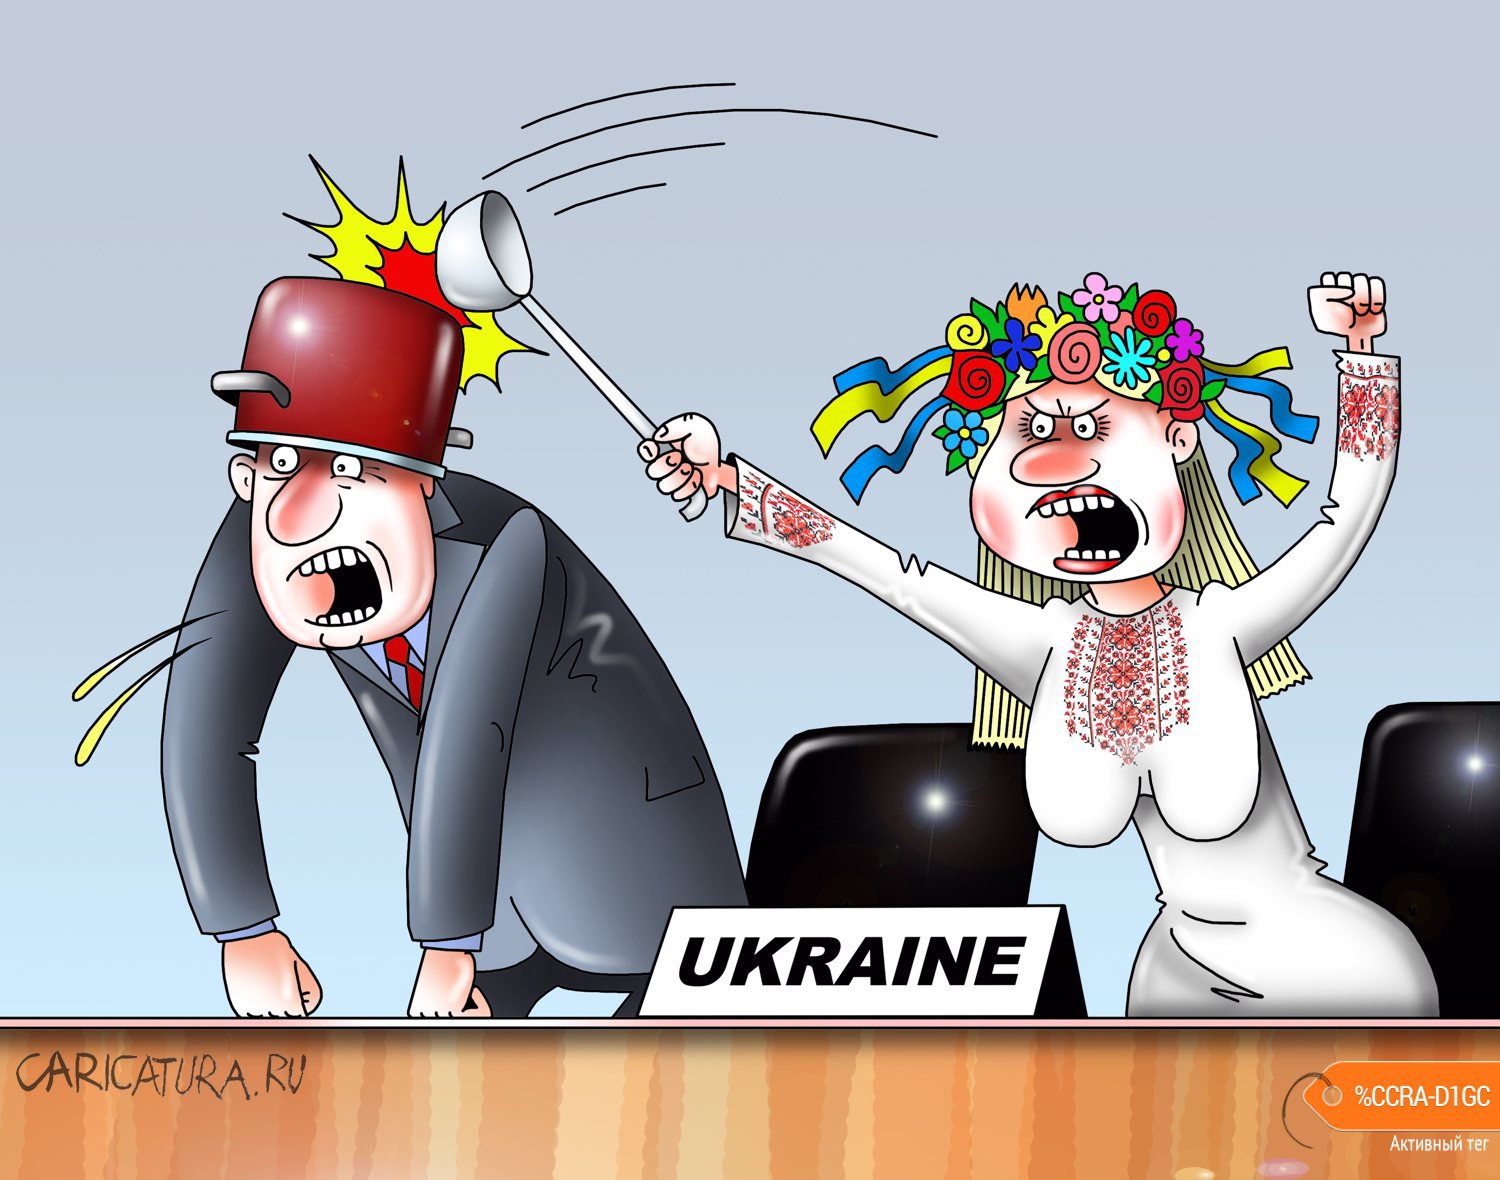 Сергей Корсун «Делегаты Украины сорвали выступление представителя»